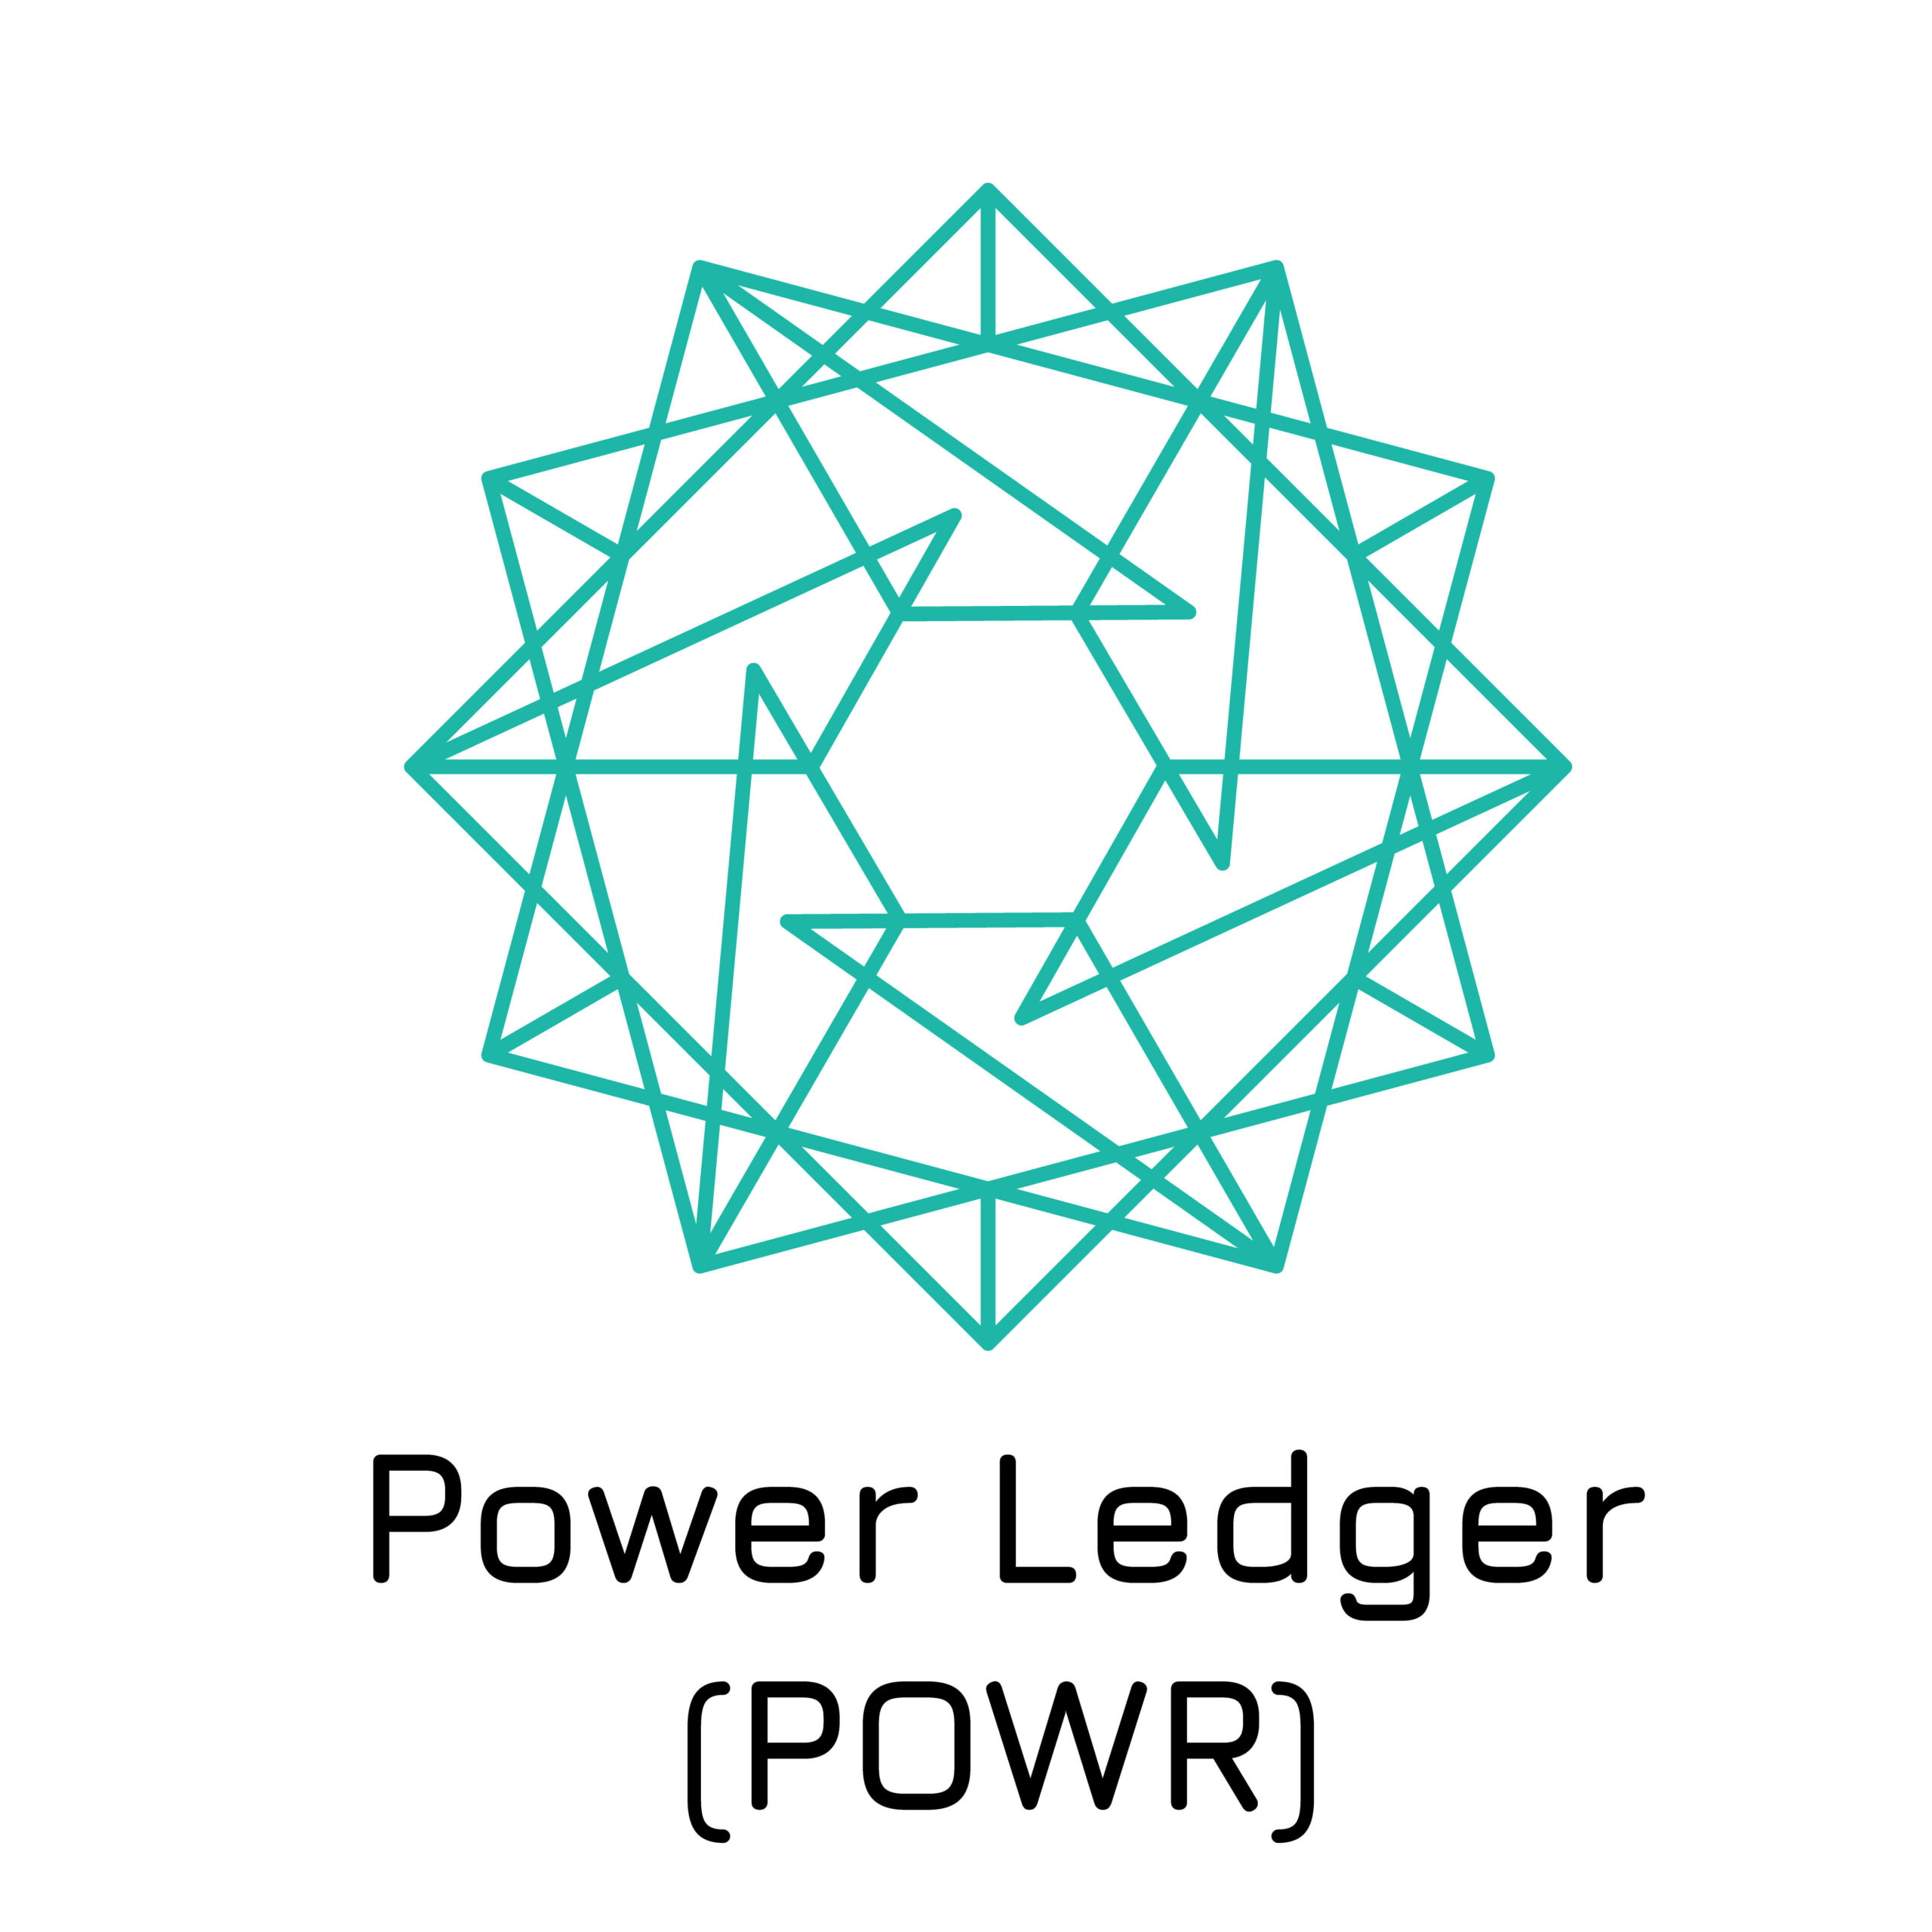 Power Ledger (POWR) crypto token on a white background.